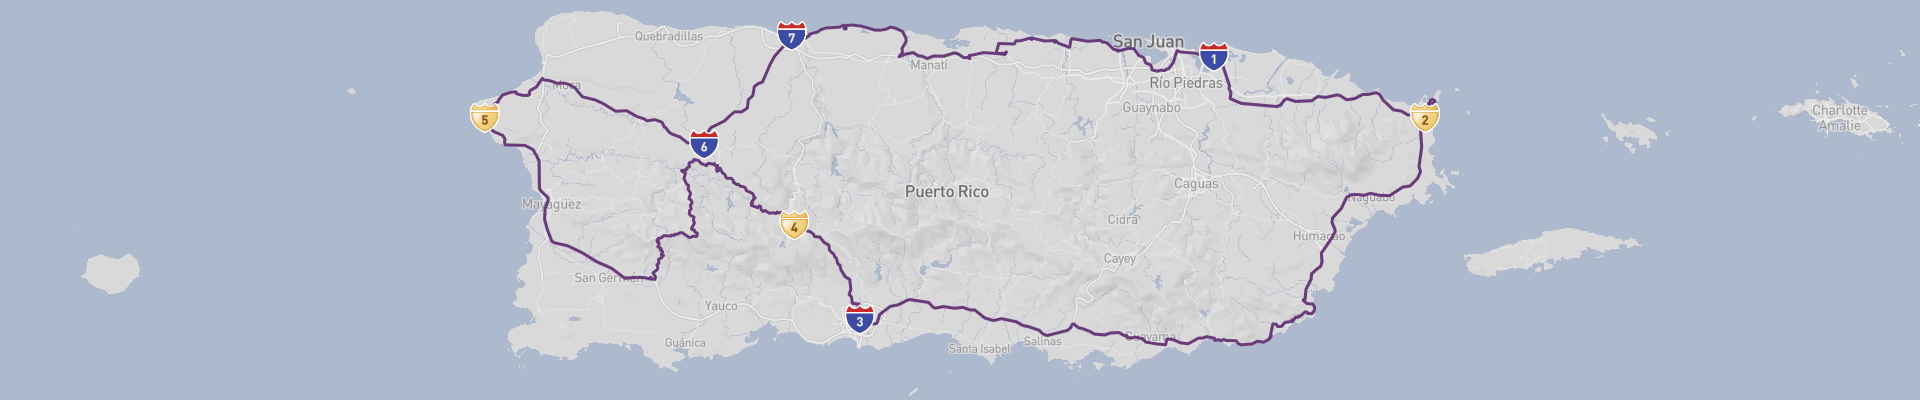 Puerto Rico Road Trip